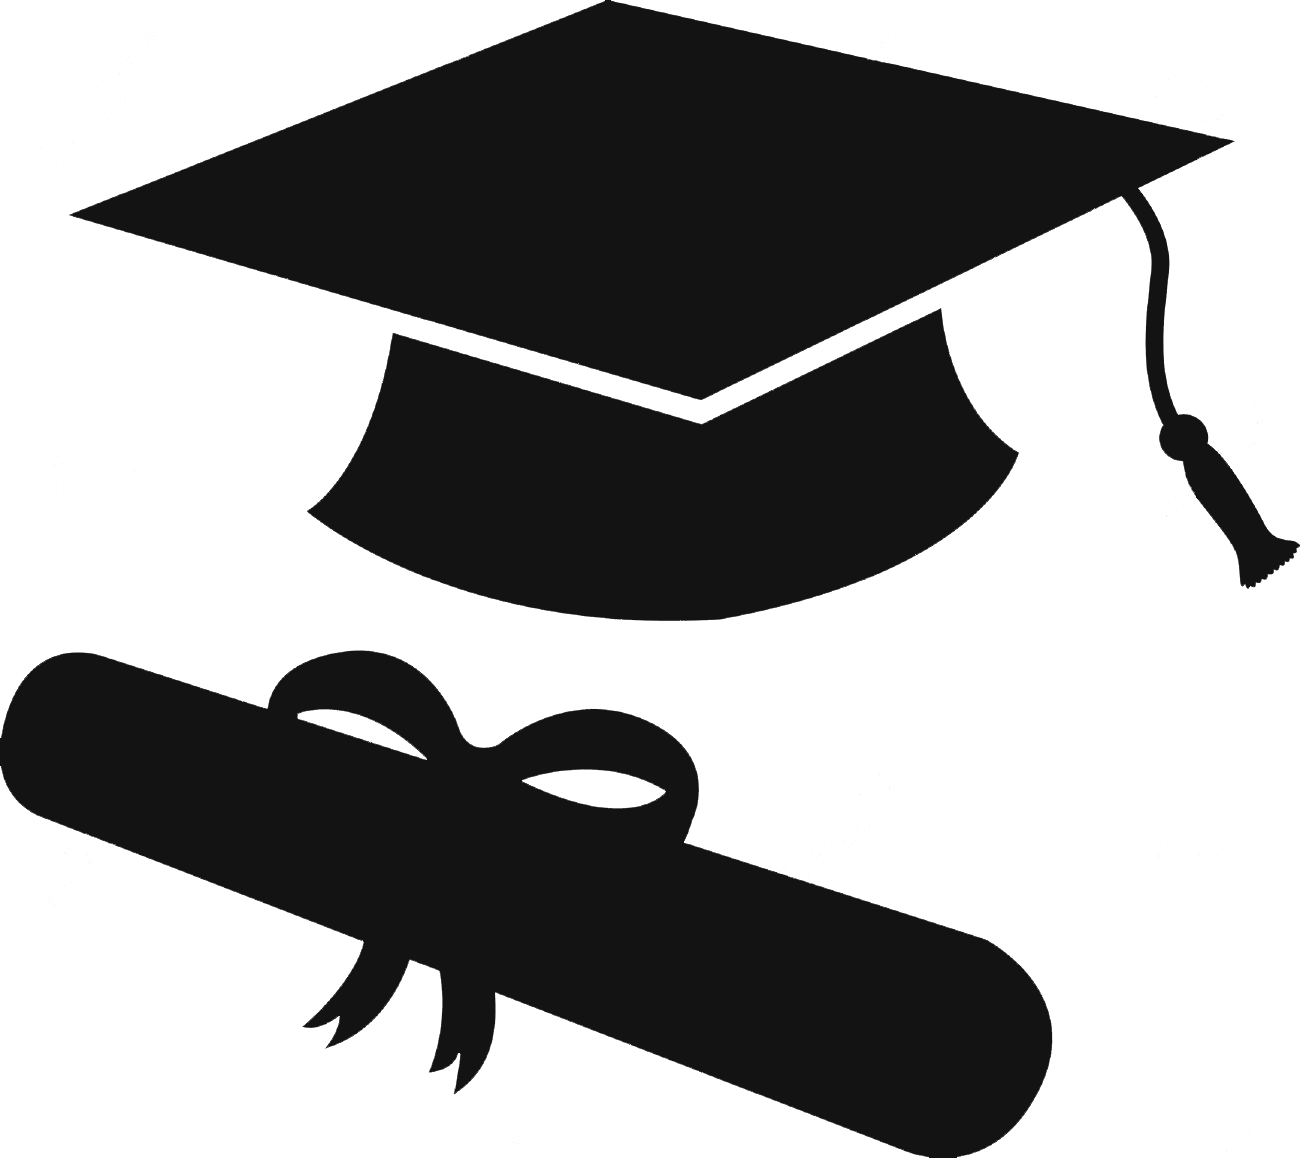 Graduation Ceremony Square Academic Cap Silhouette Clip Art